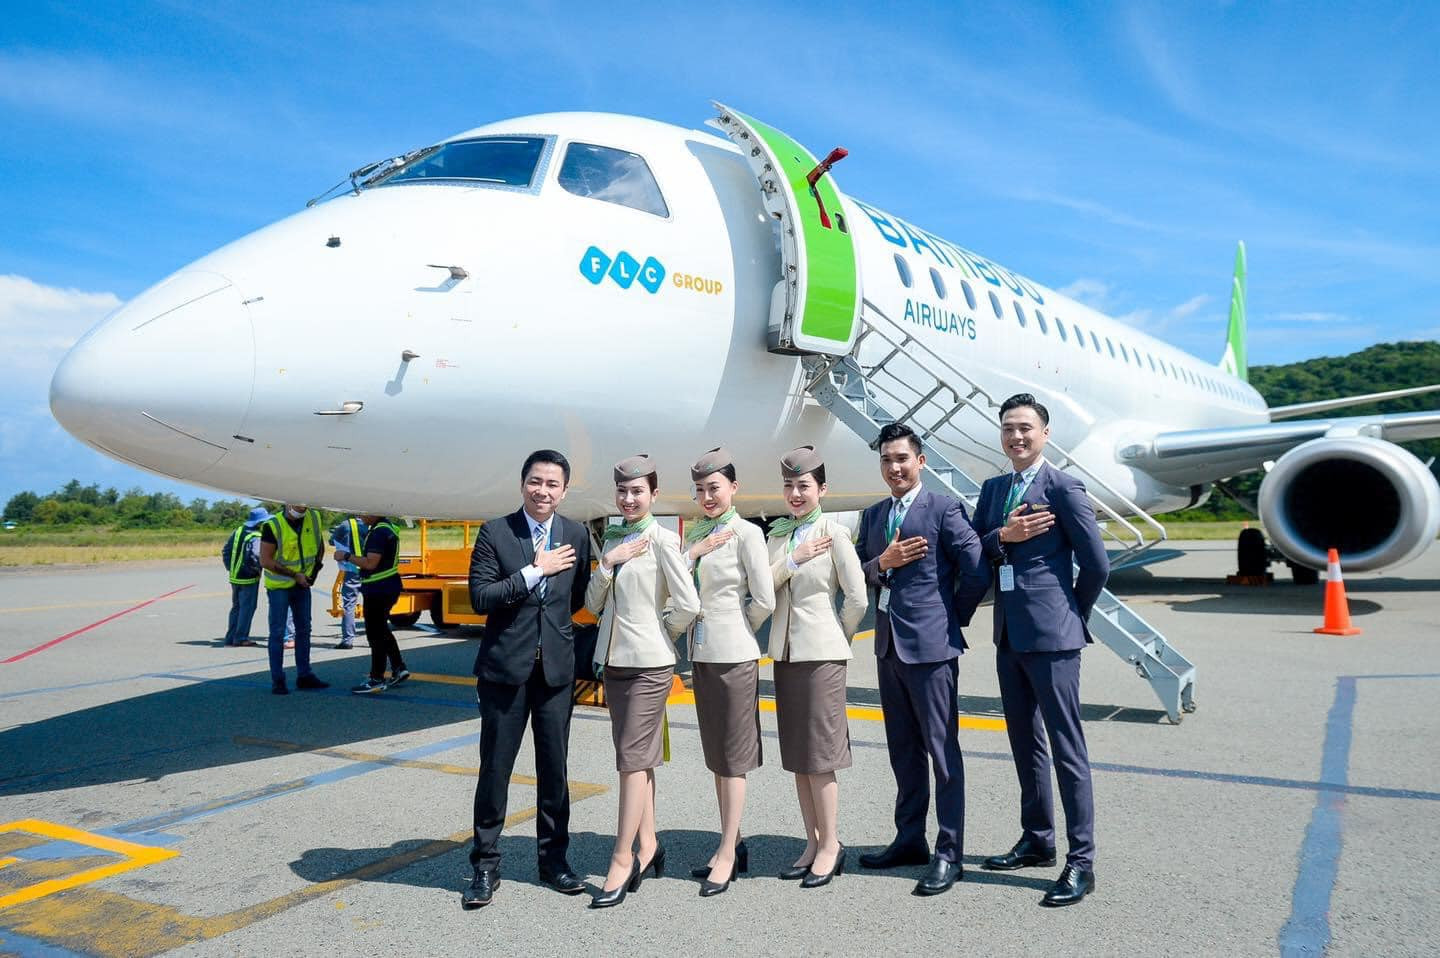 Khai trương 3 đường bay thẳng, Bamboo Airways tặng 1 tỷ đồng tiền mặt hỗ trợ hộ nghèo Côn Đảo - ảnh 6